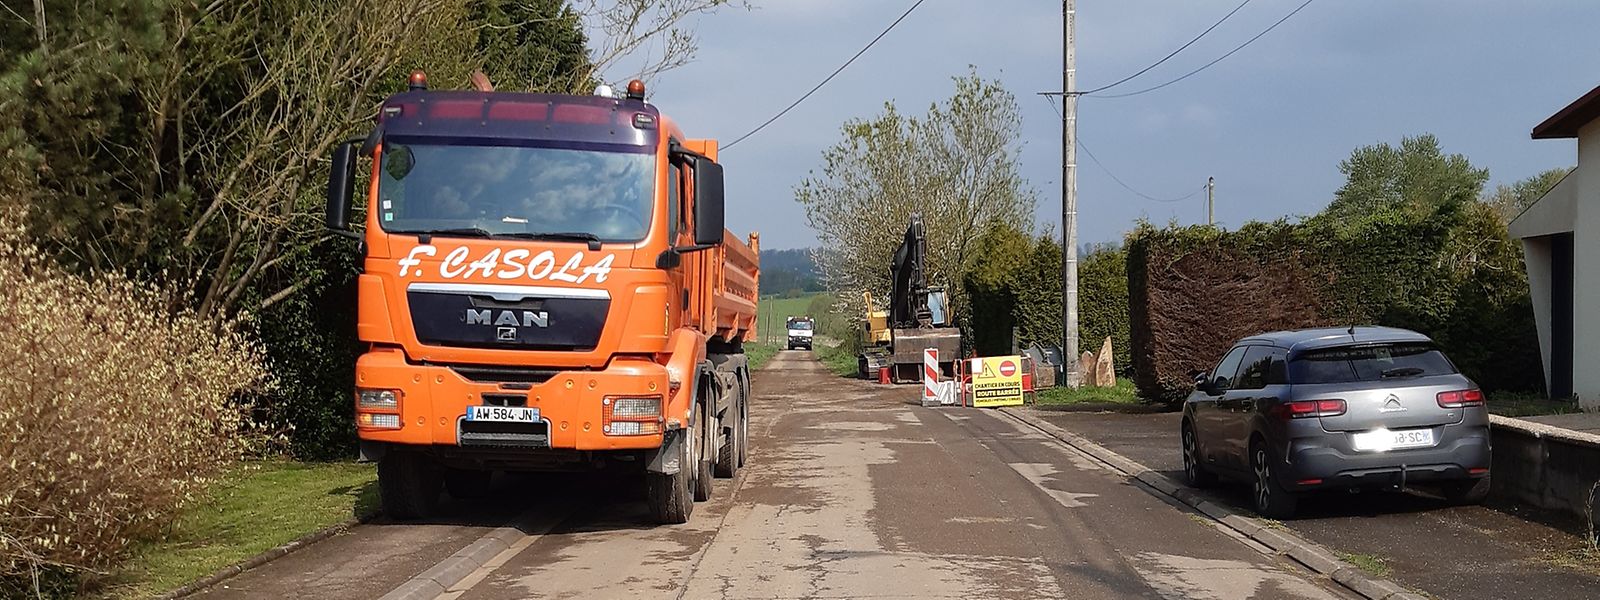 Les travaux ont débuté le 19 avril au niveau du réaménagement du chemin agricole en voie verte entre la commune de Russange et Belval.